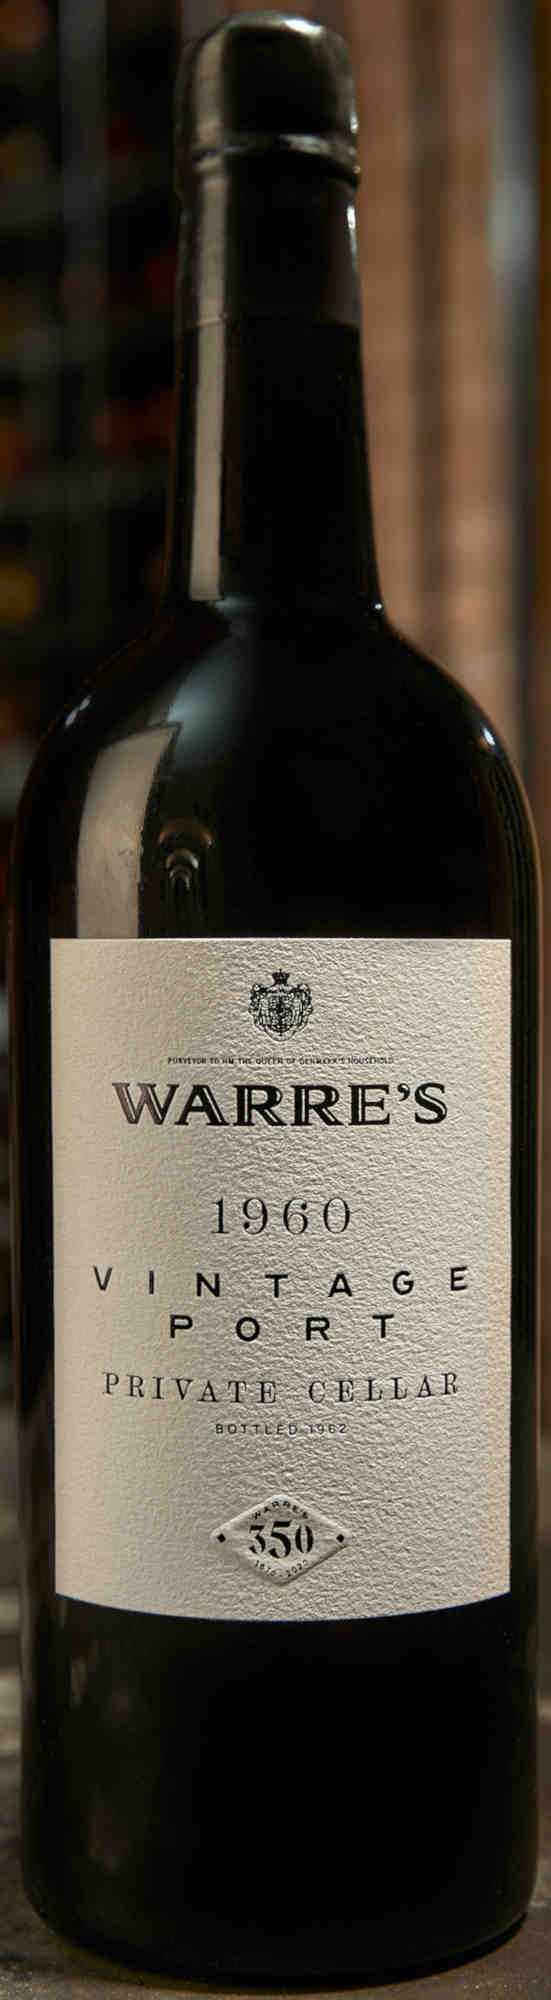 Warres-Private-Cellar-Vintage-Port-1960